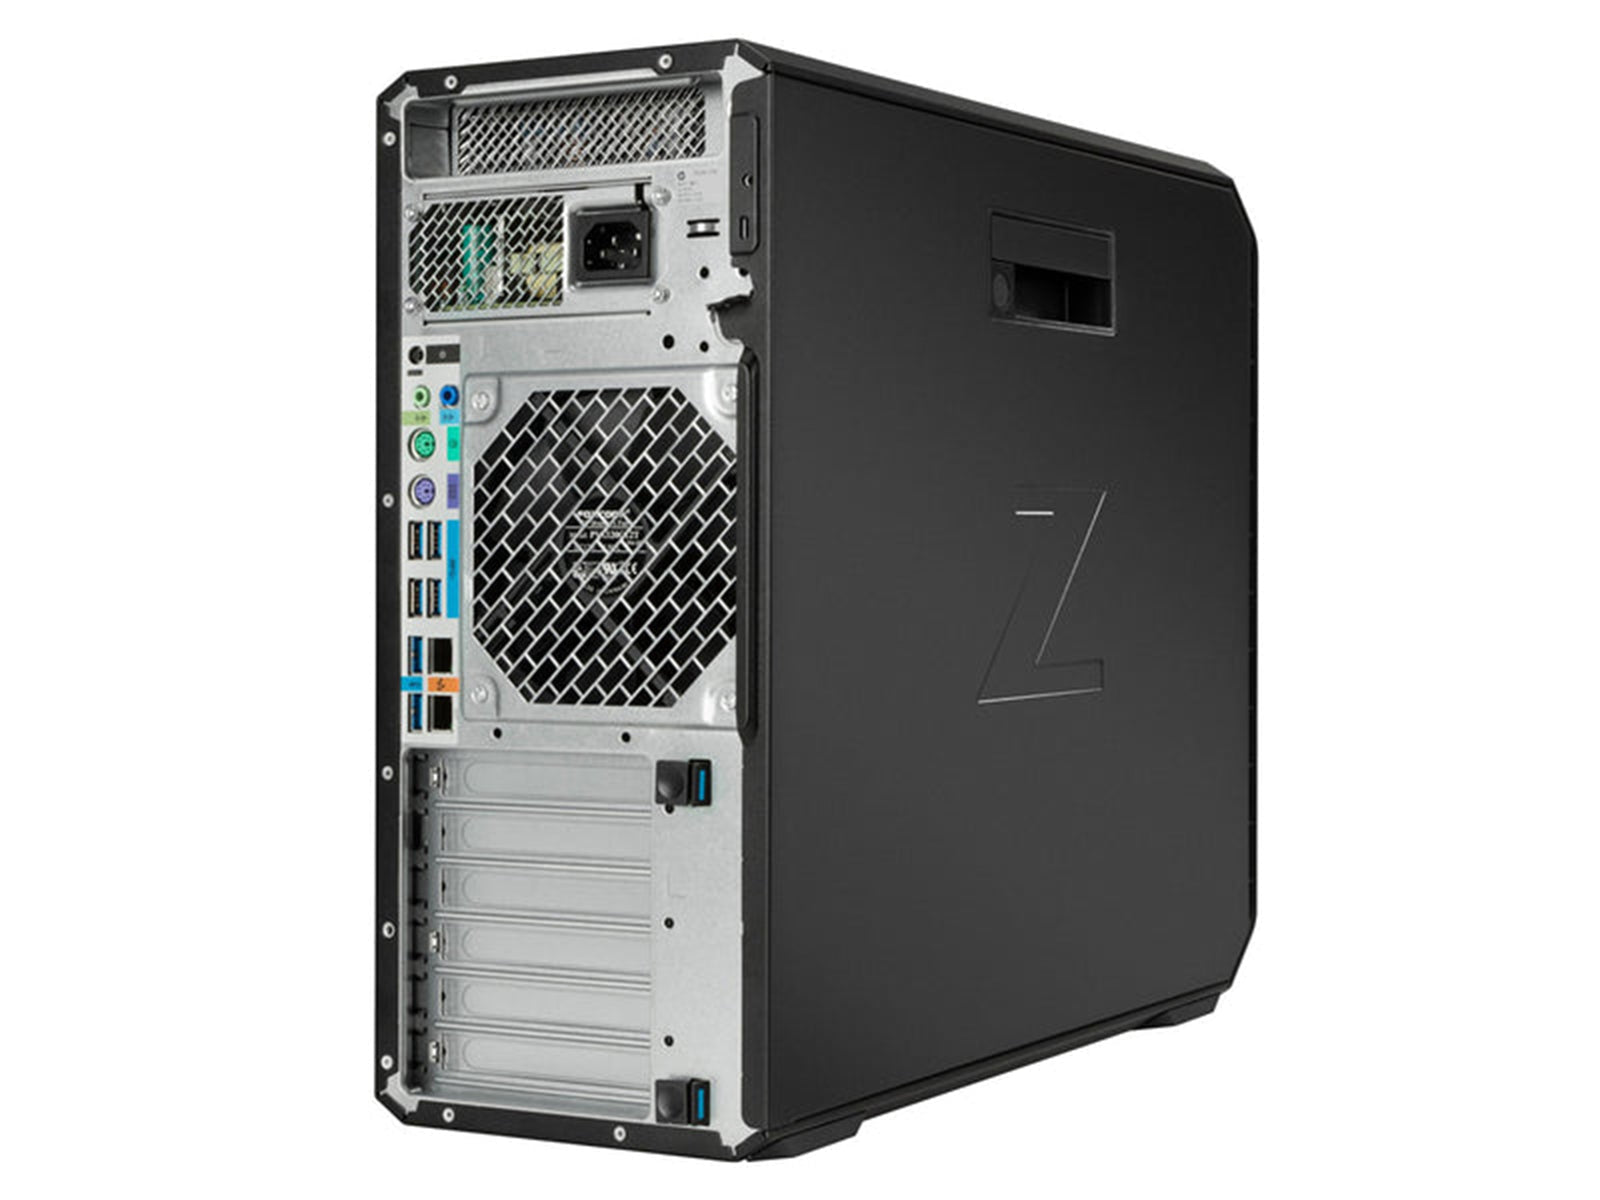 Station de travail HP Z4 G4 | Intel Xeon W-2245 | 128 Go DDR4 | SSD NVMe de 1 To | MXRT-8700 | Win10 Pro